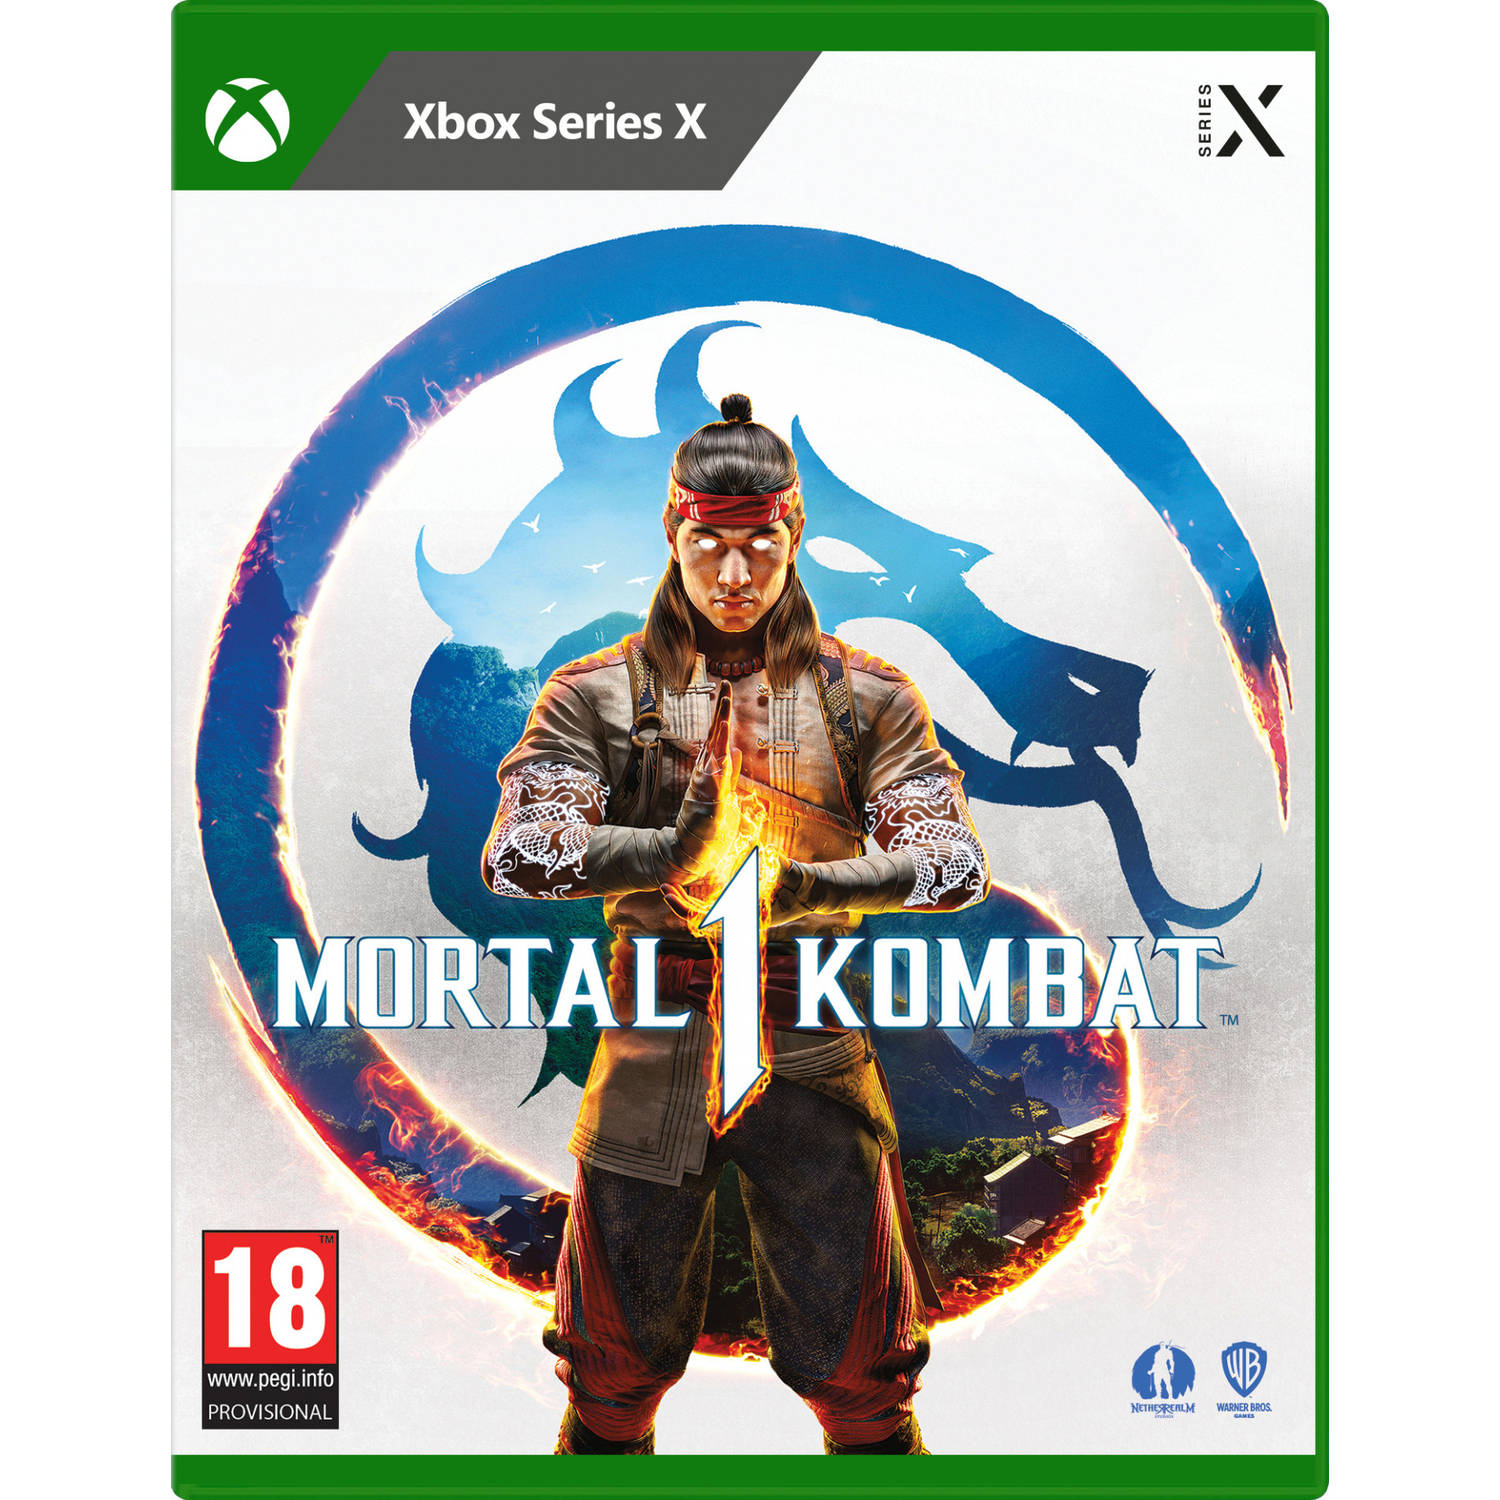 Mortal Kombat 1 + Pre-Order DLC Xbox Series X